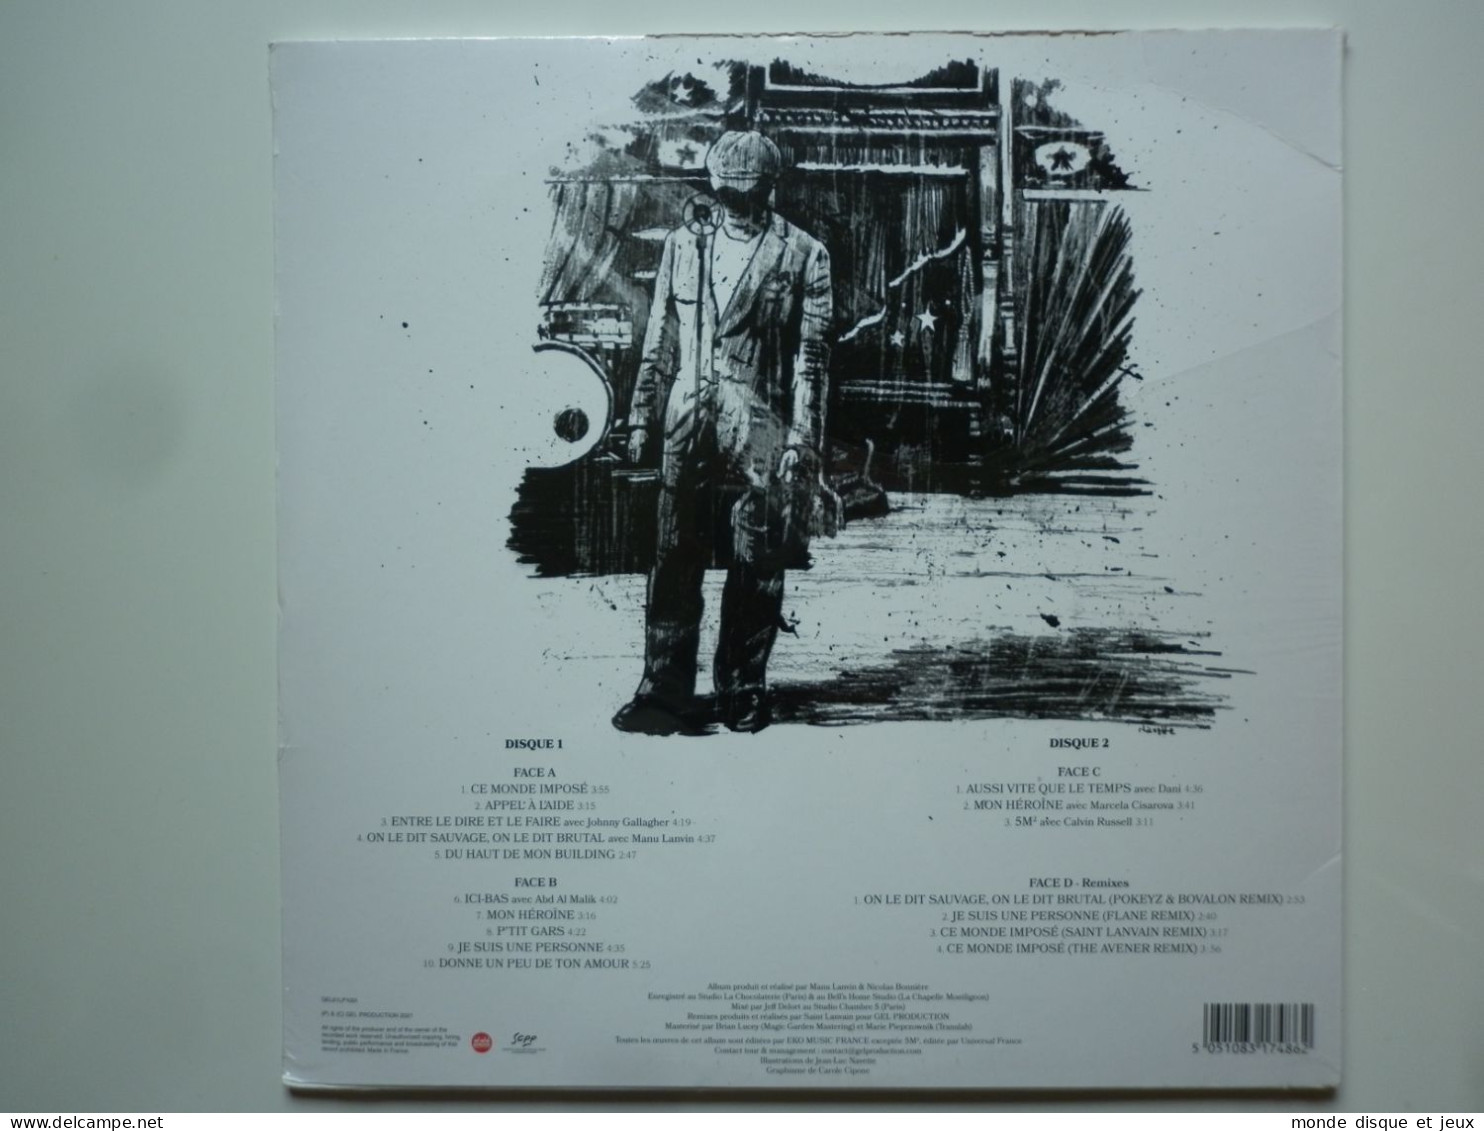 Gérard Lanvin Album Double 33Tours Vinyles Ici-Bas Collector Edition - Autres - Musique Française